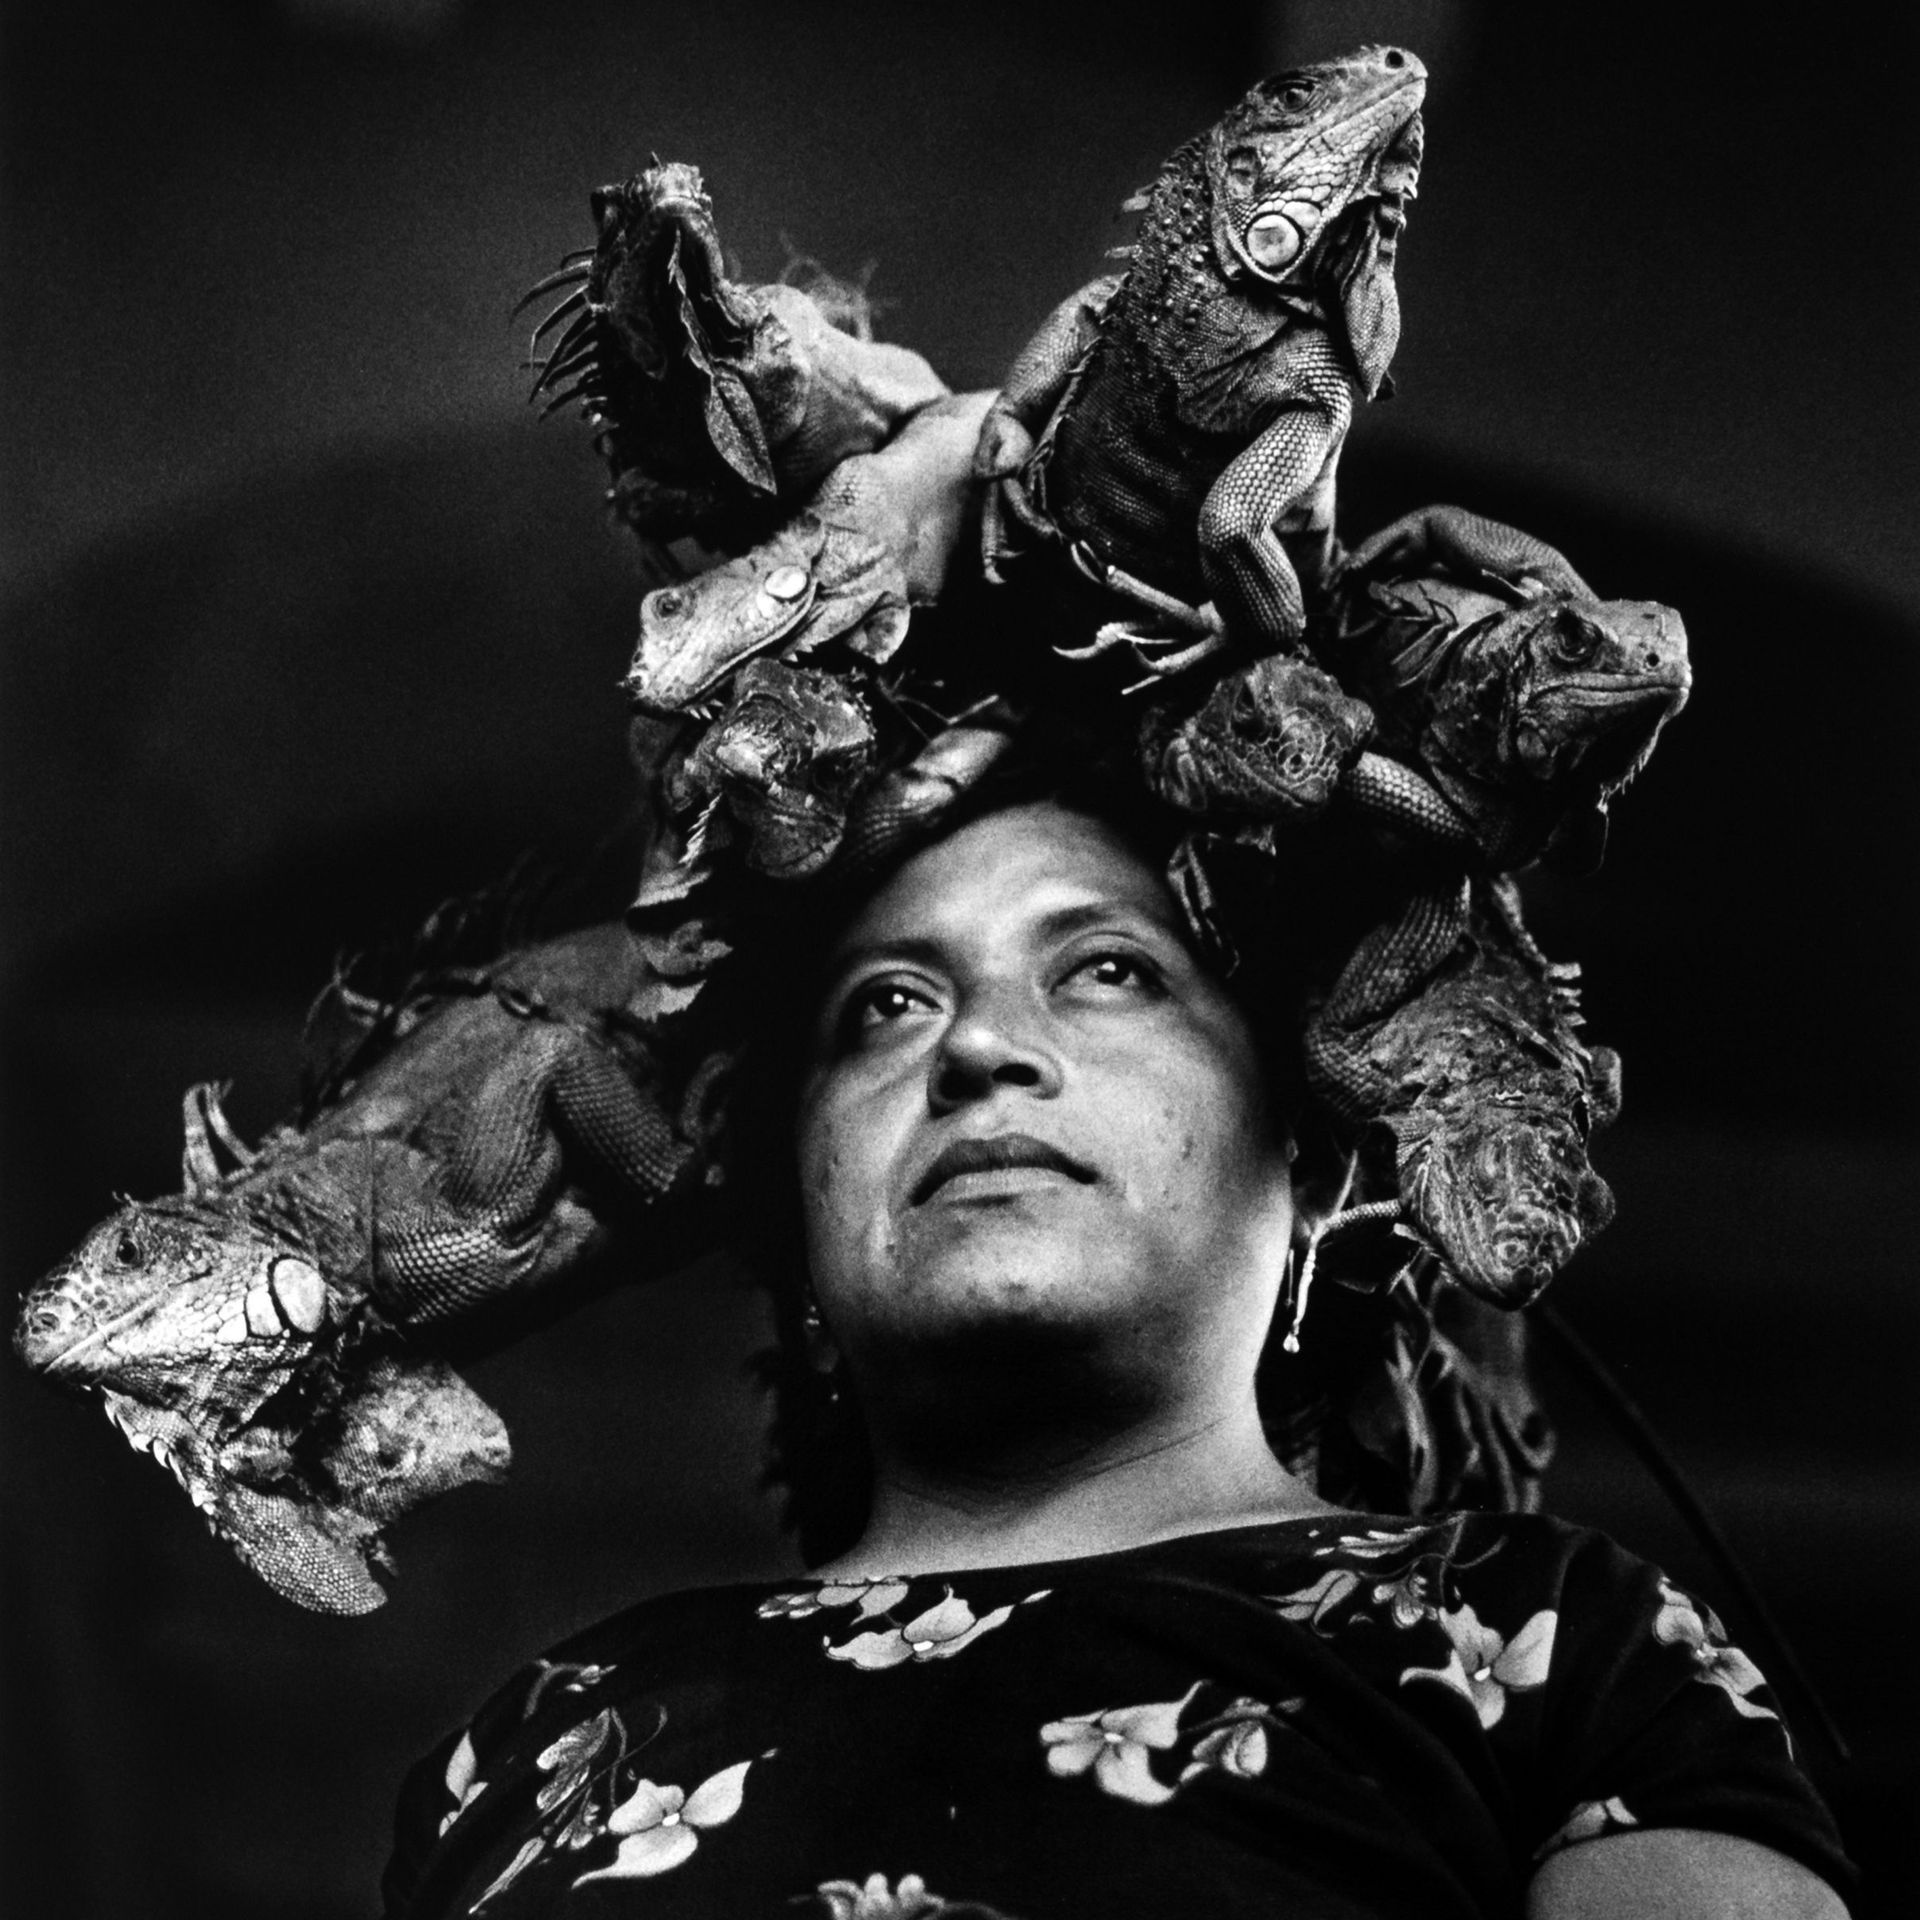 Graciela Iturbide, Nuestra Señora  de las Iguanas, Juchitan, Mexico - 1979